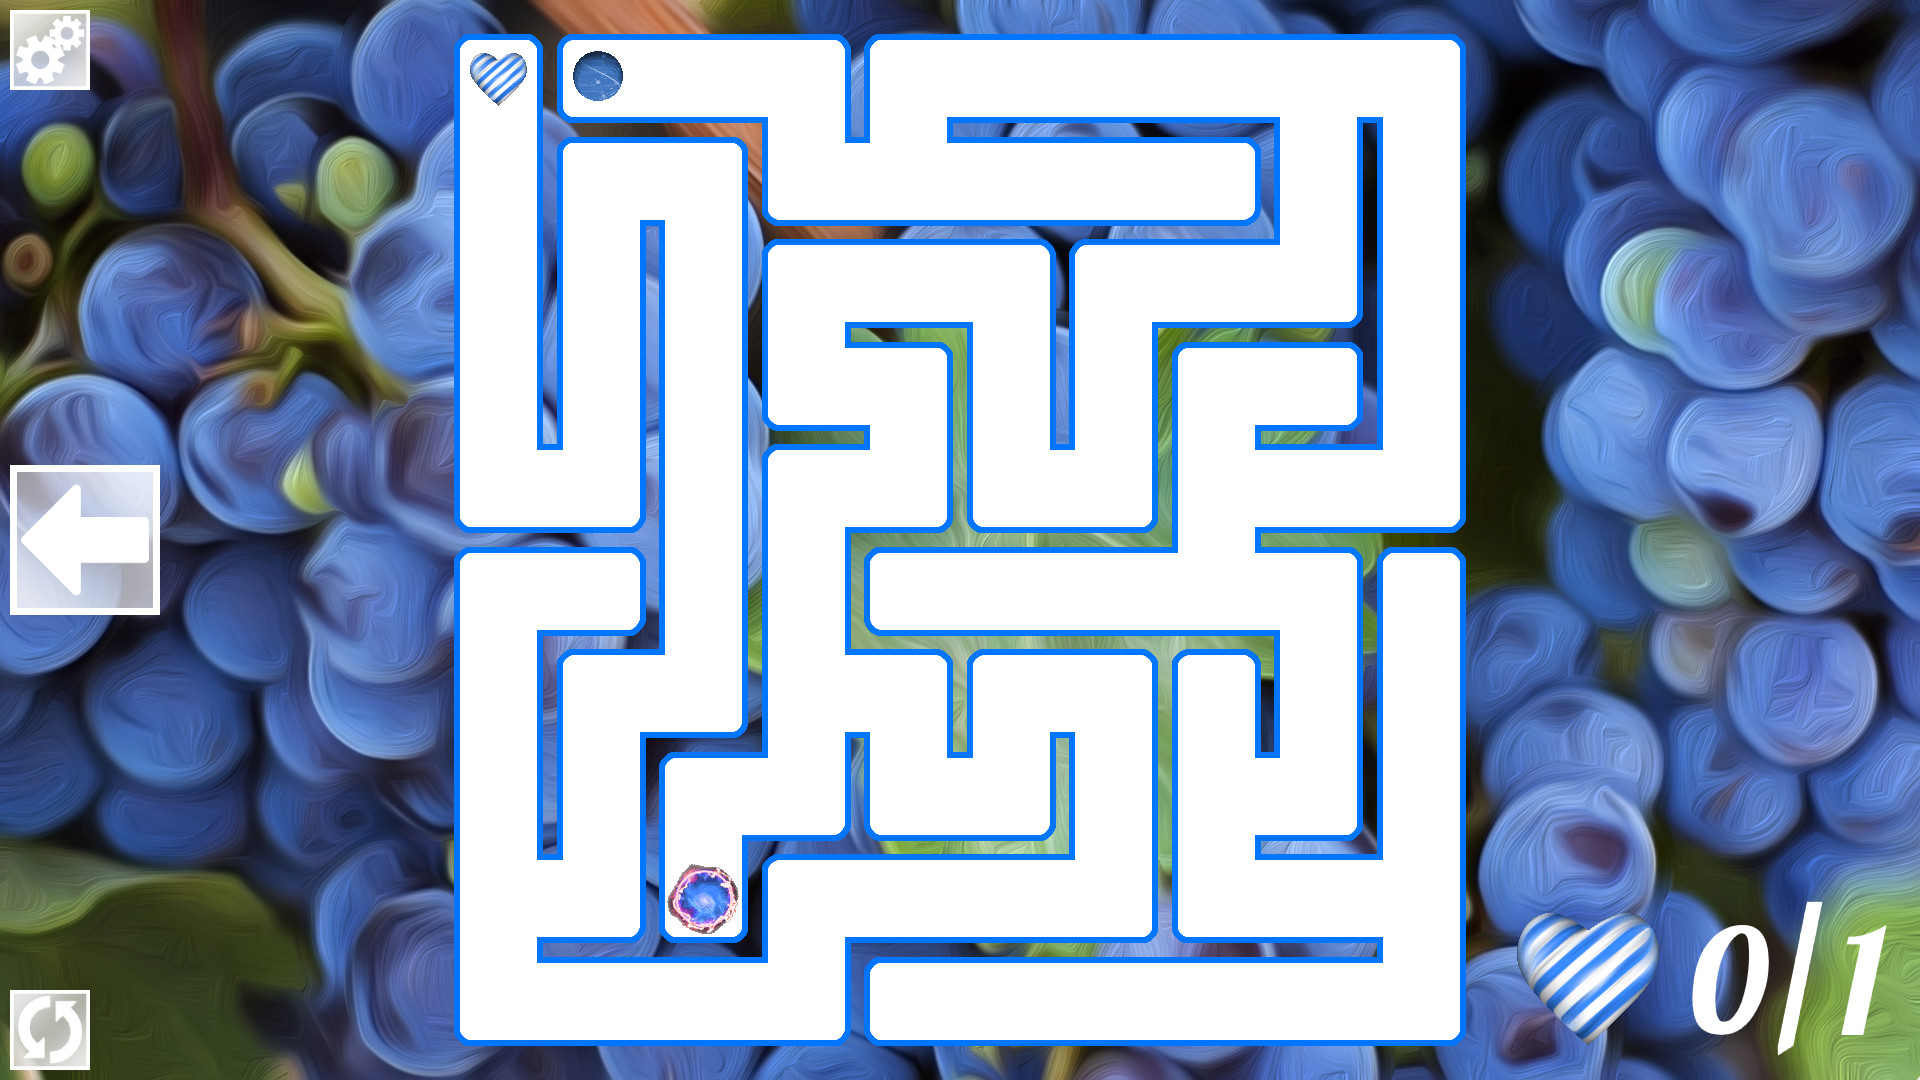 Maze Art: Blue Steam CD Key